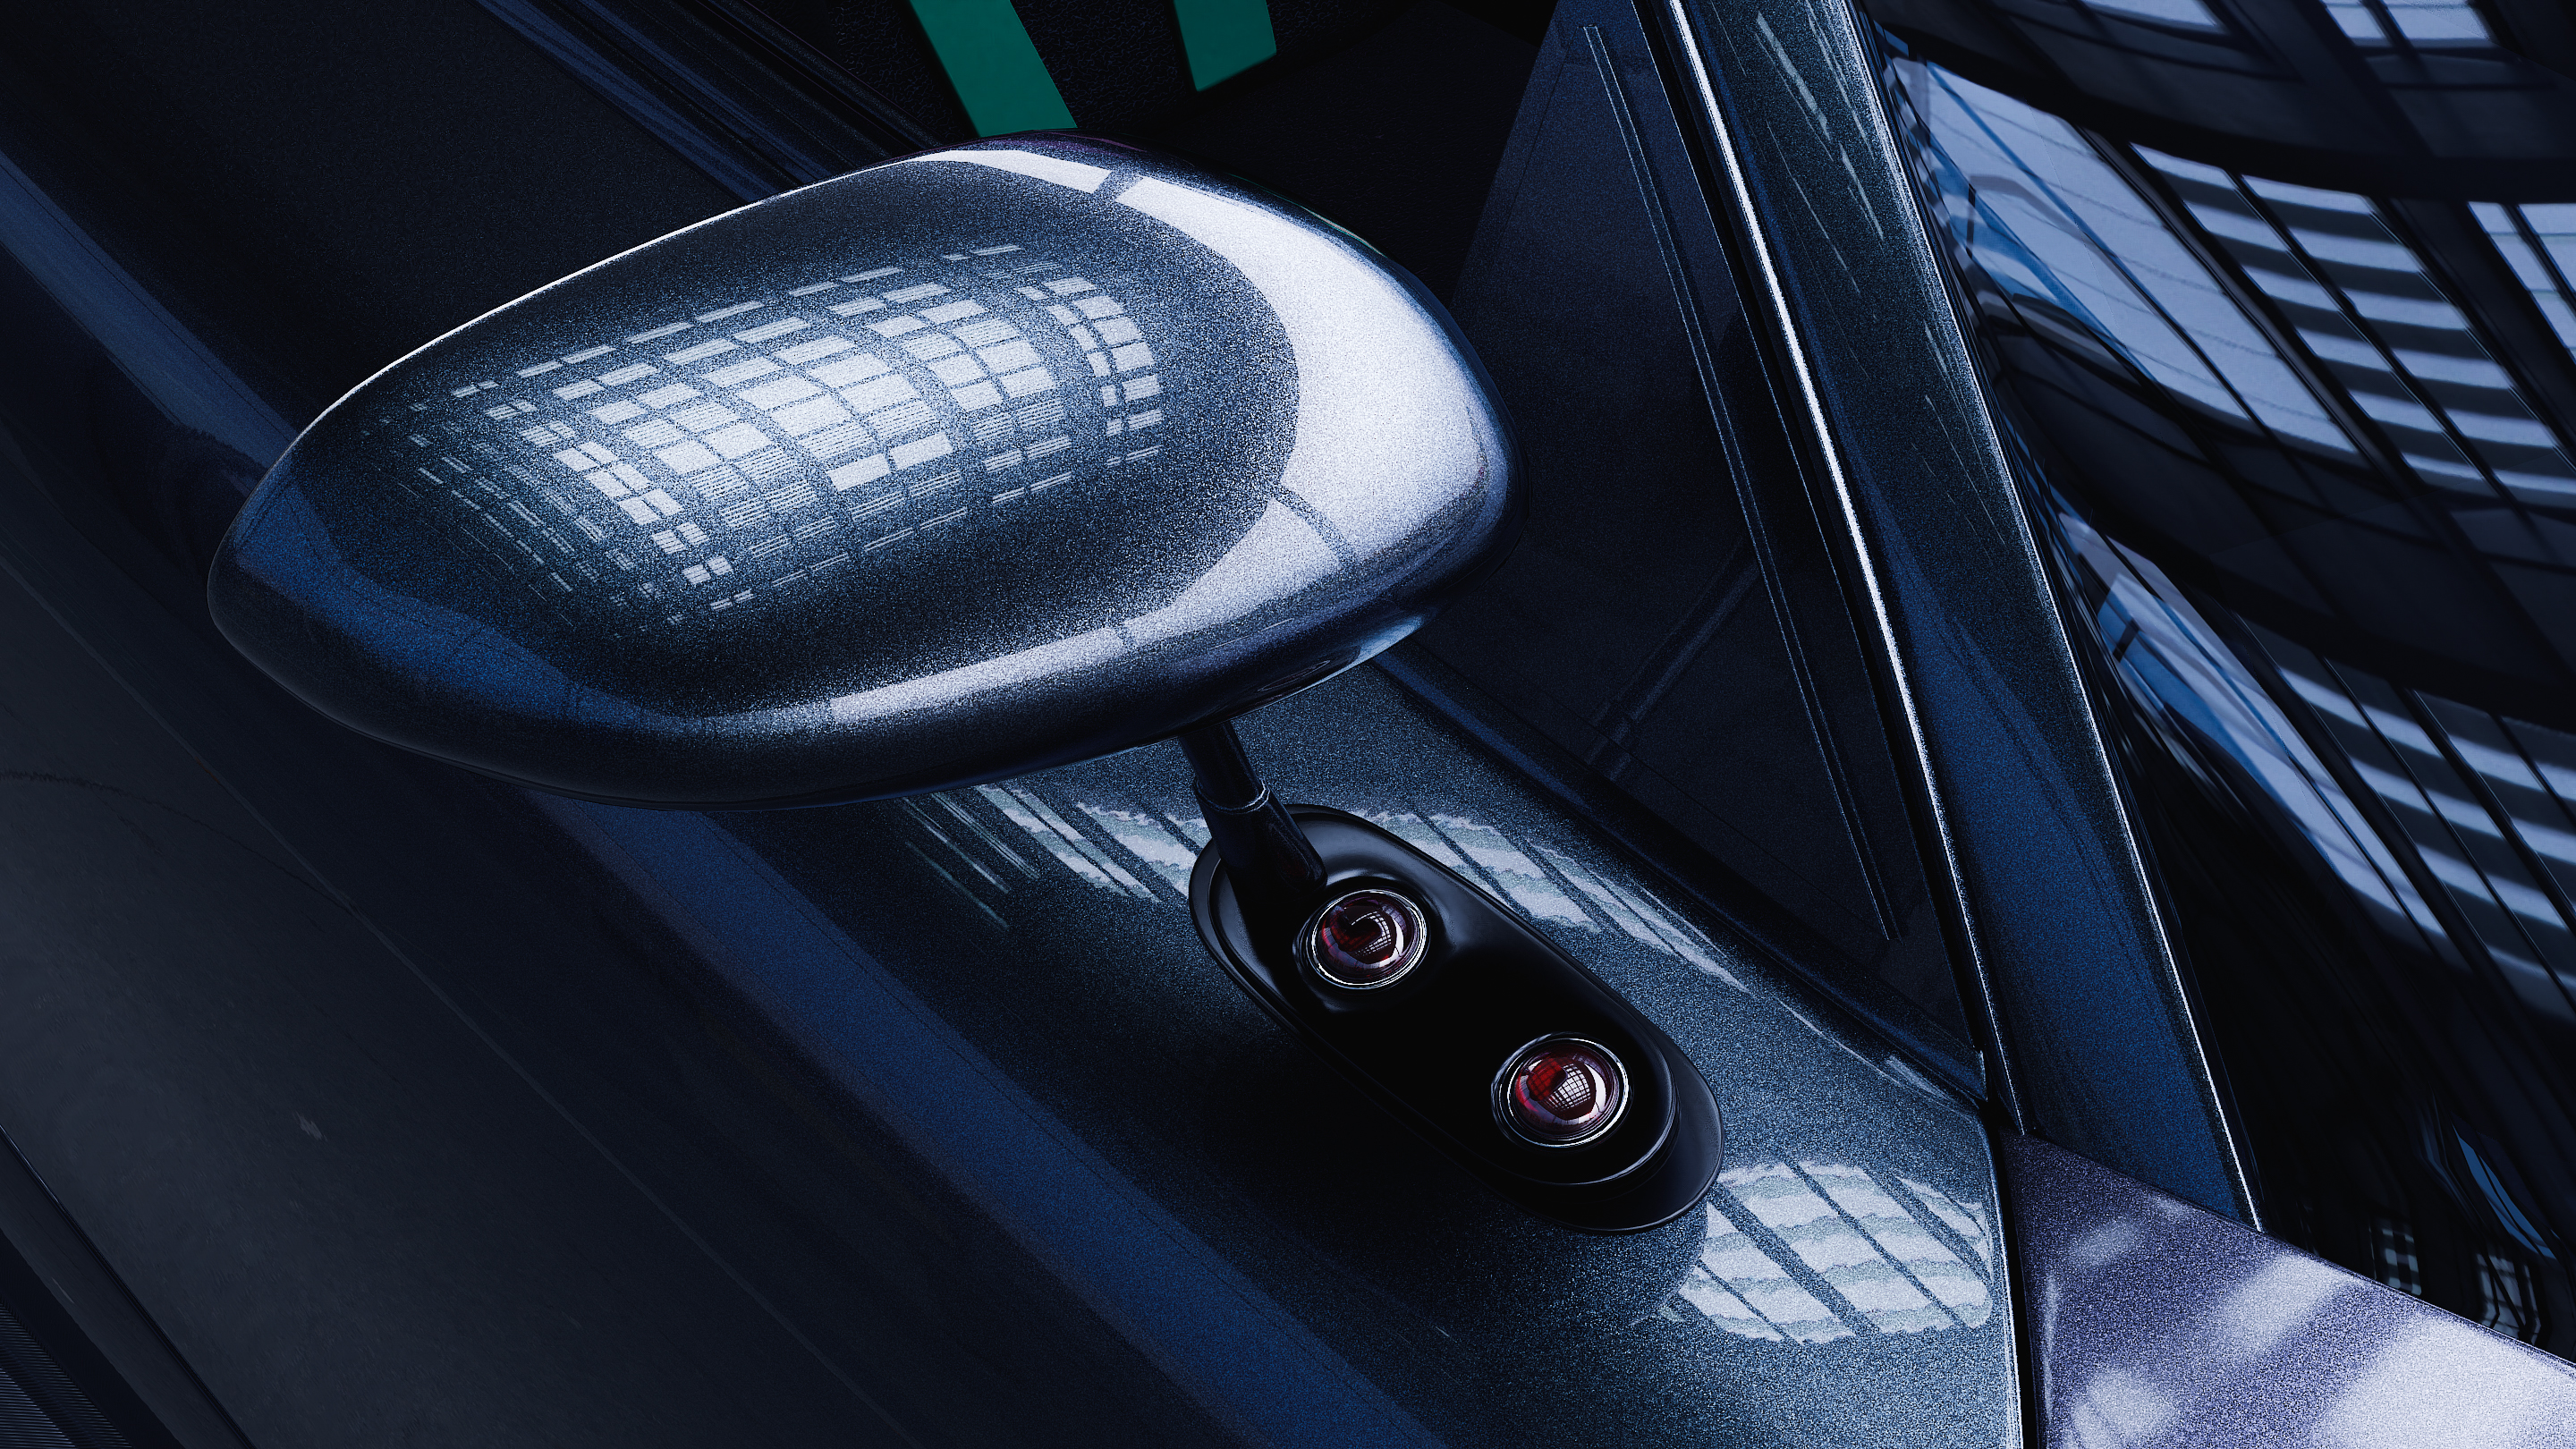 imagen de Mazda RX-7 en Blender cycles render